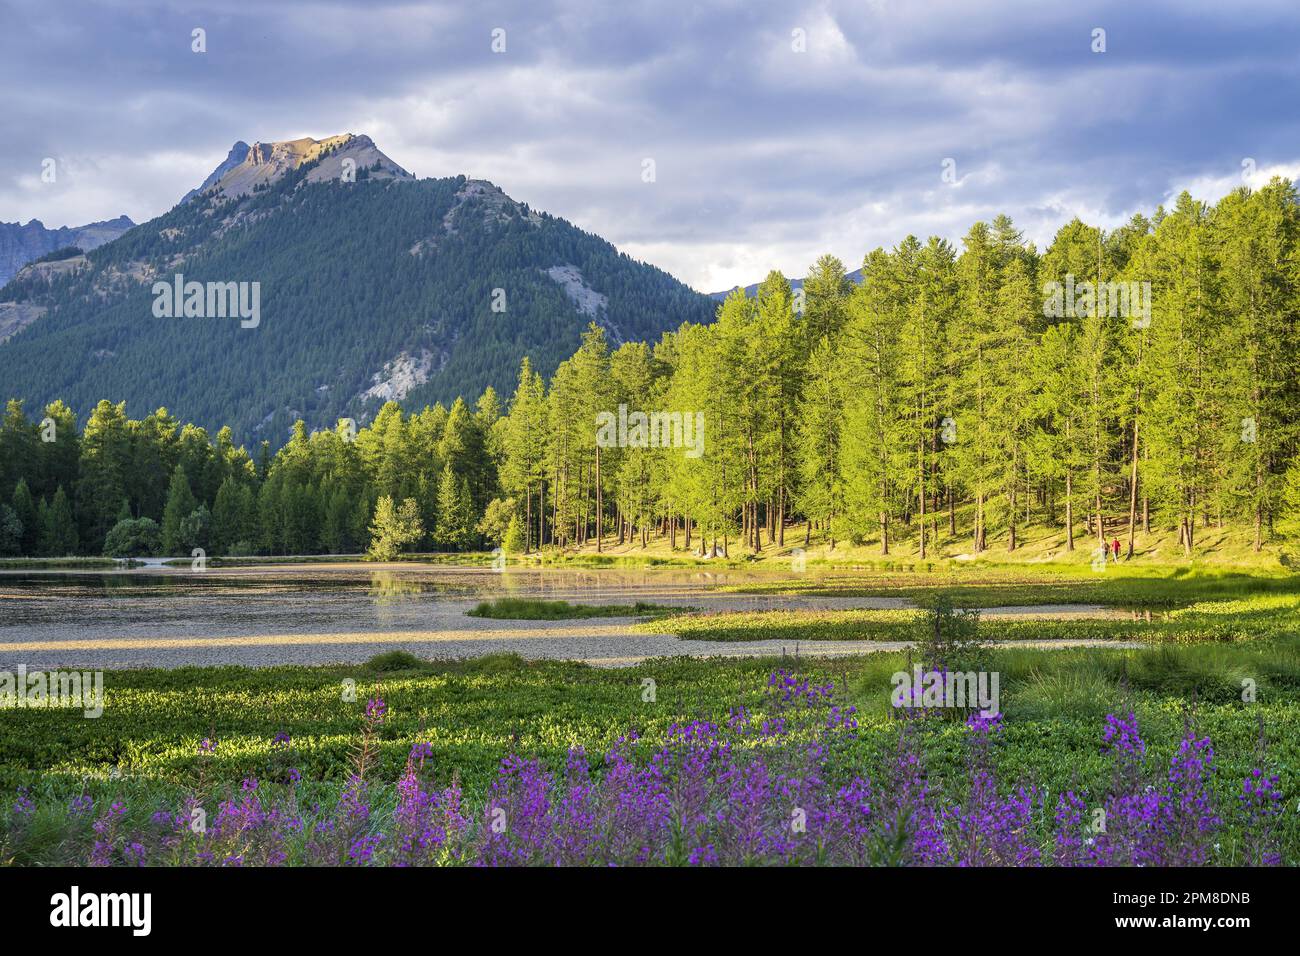 France, Hautes-Alpes, Réserve naturelle régionale de Queyras, lac de Roue (1854 m) entourée d'une forêt de Larch (Larix decidua) Banque D'Images